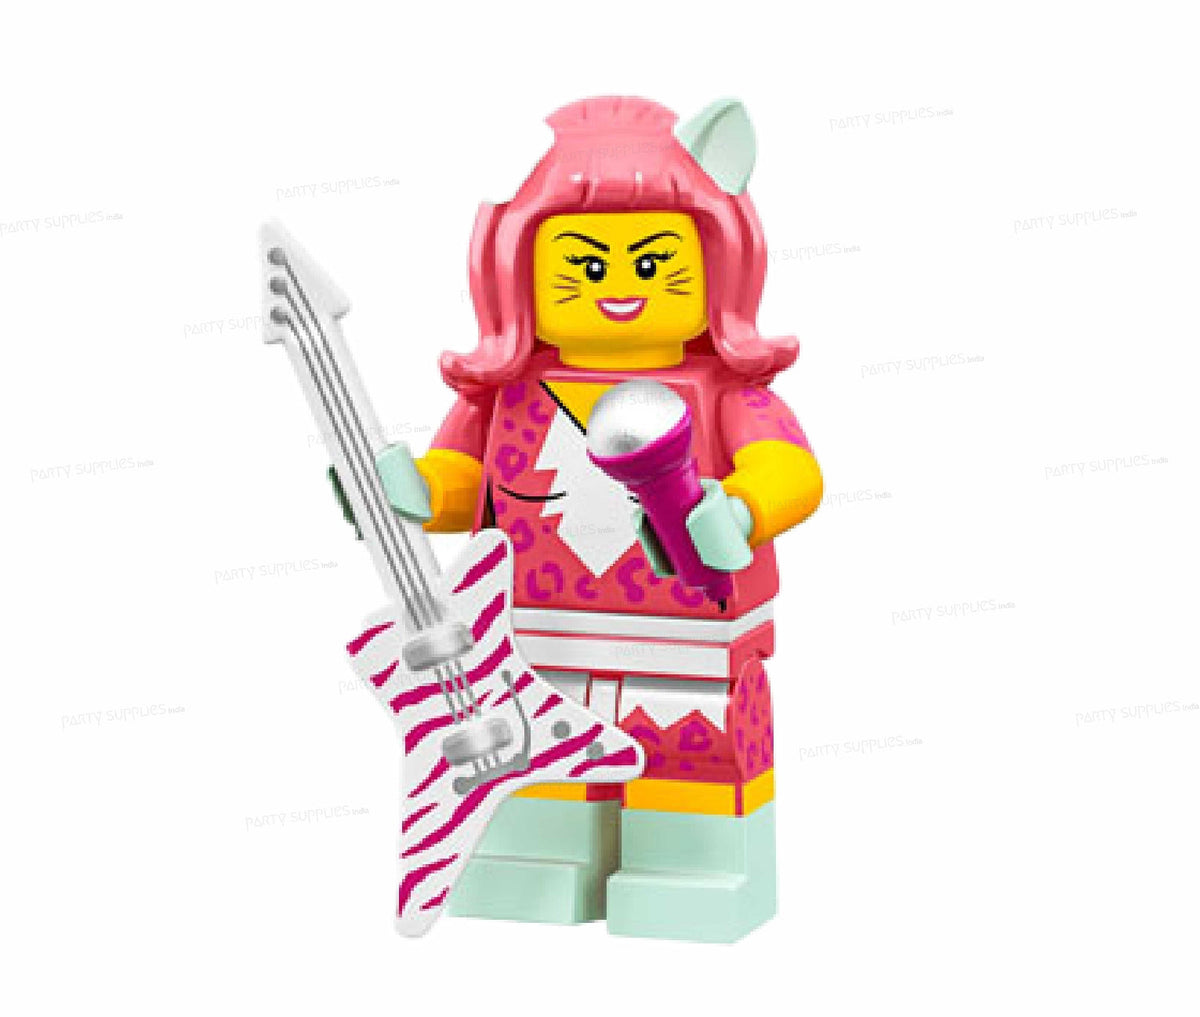 PSI Lego Theme Cutout -13